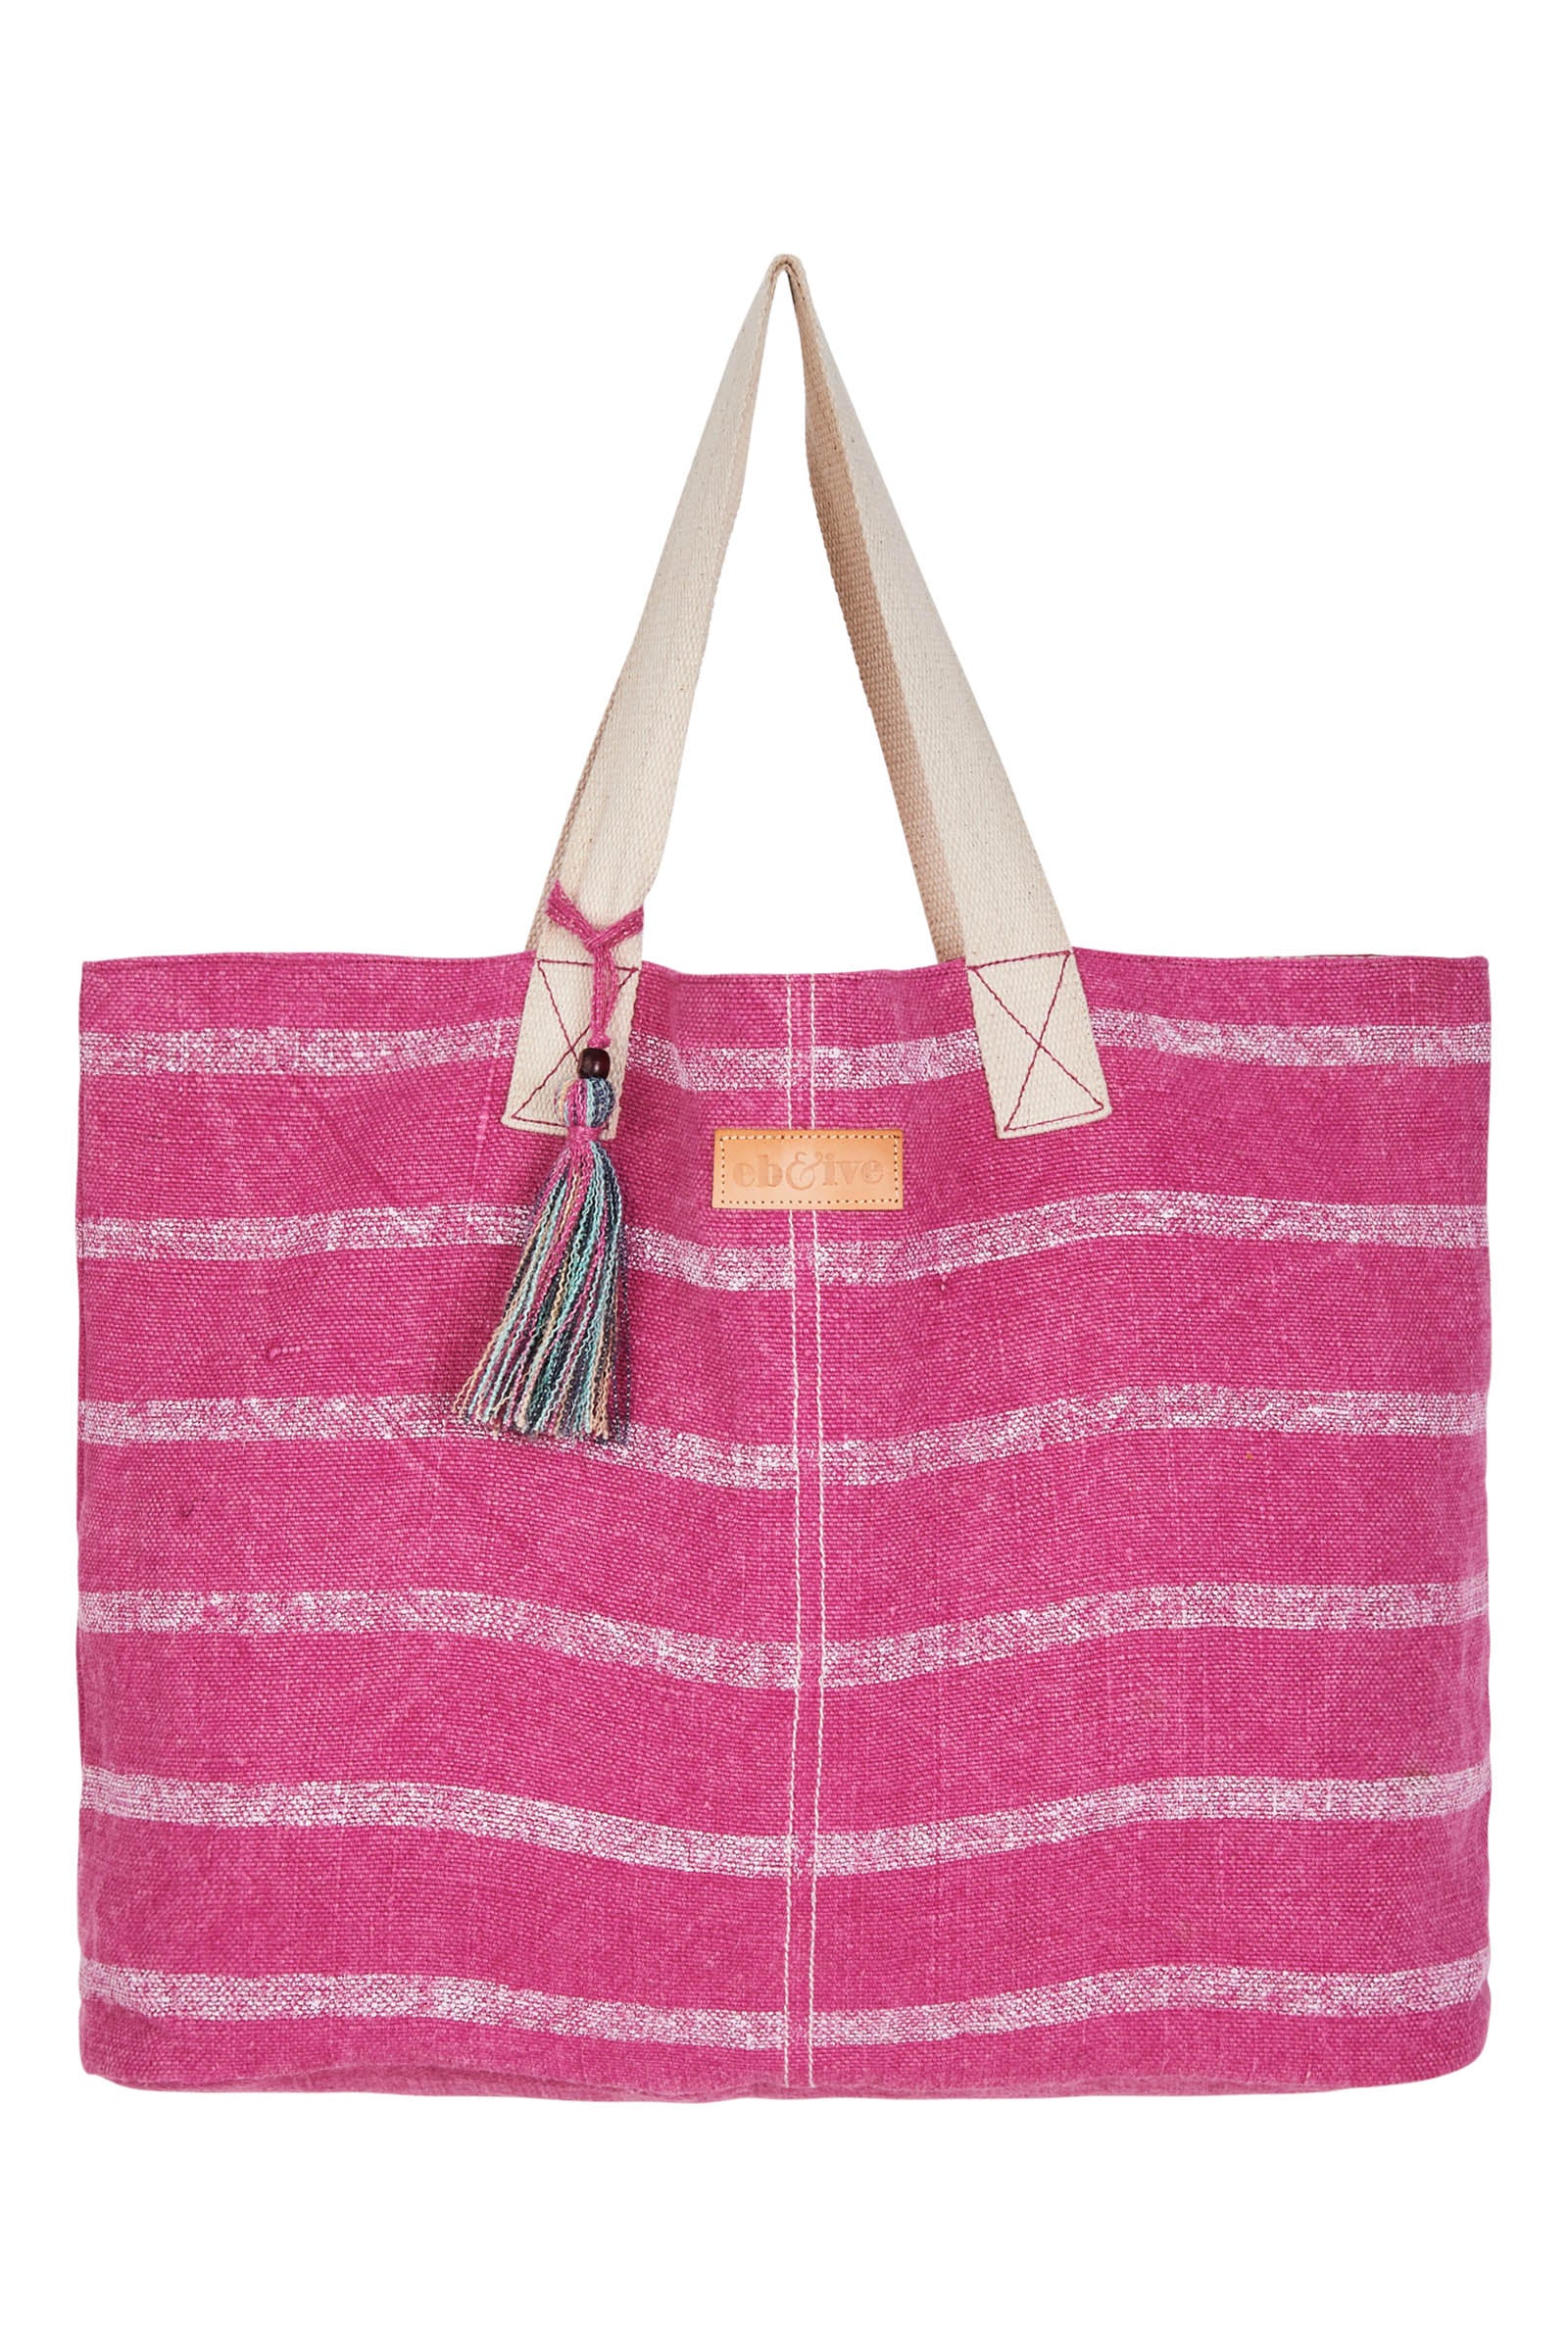 La Vie Beach Bag - Candy - eb&ive Bag